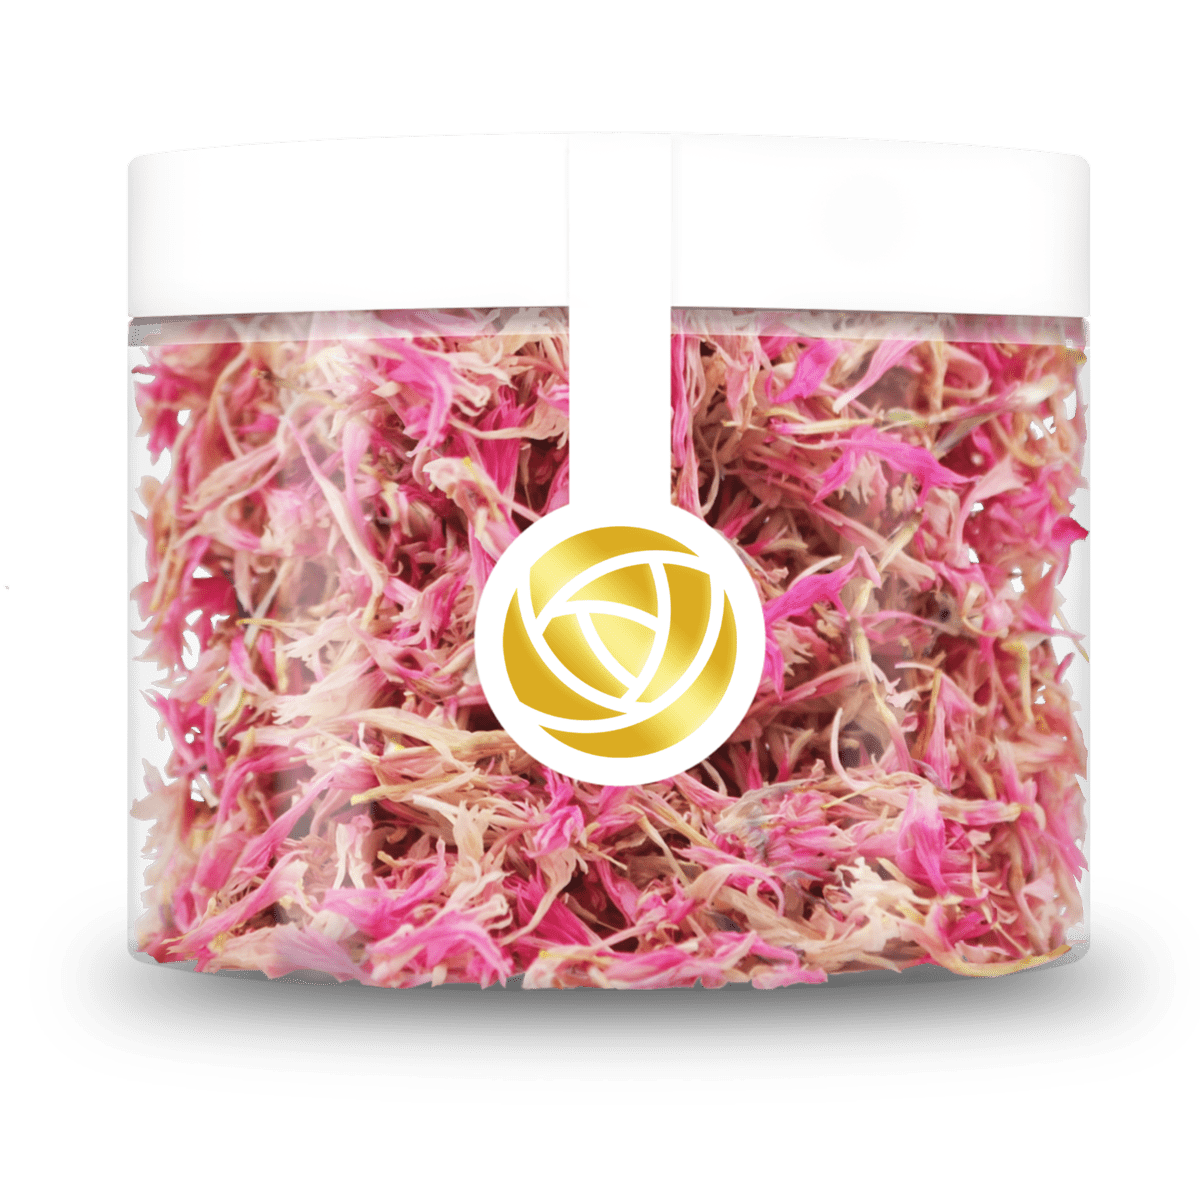 Verleihen Sie Ihren Desserts und Getränken mit unseren rosa Kornblumenblüten eine elegante Note Von ROSIE ROSE im Online-Shop kaufen